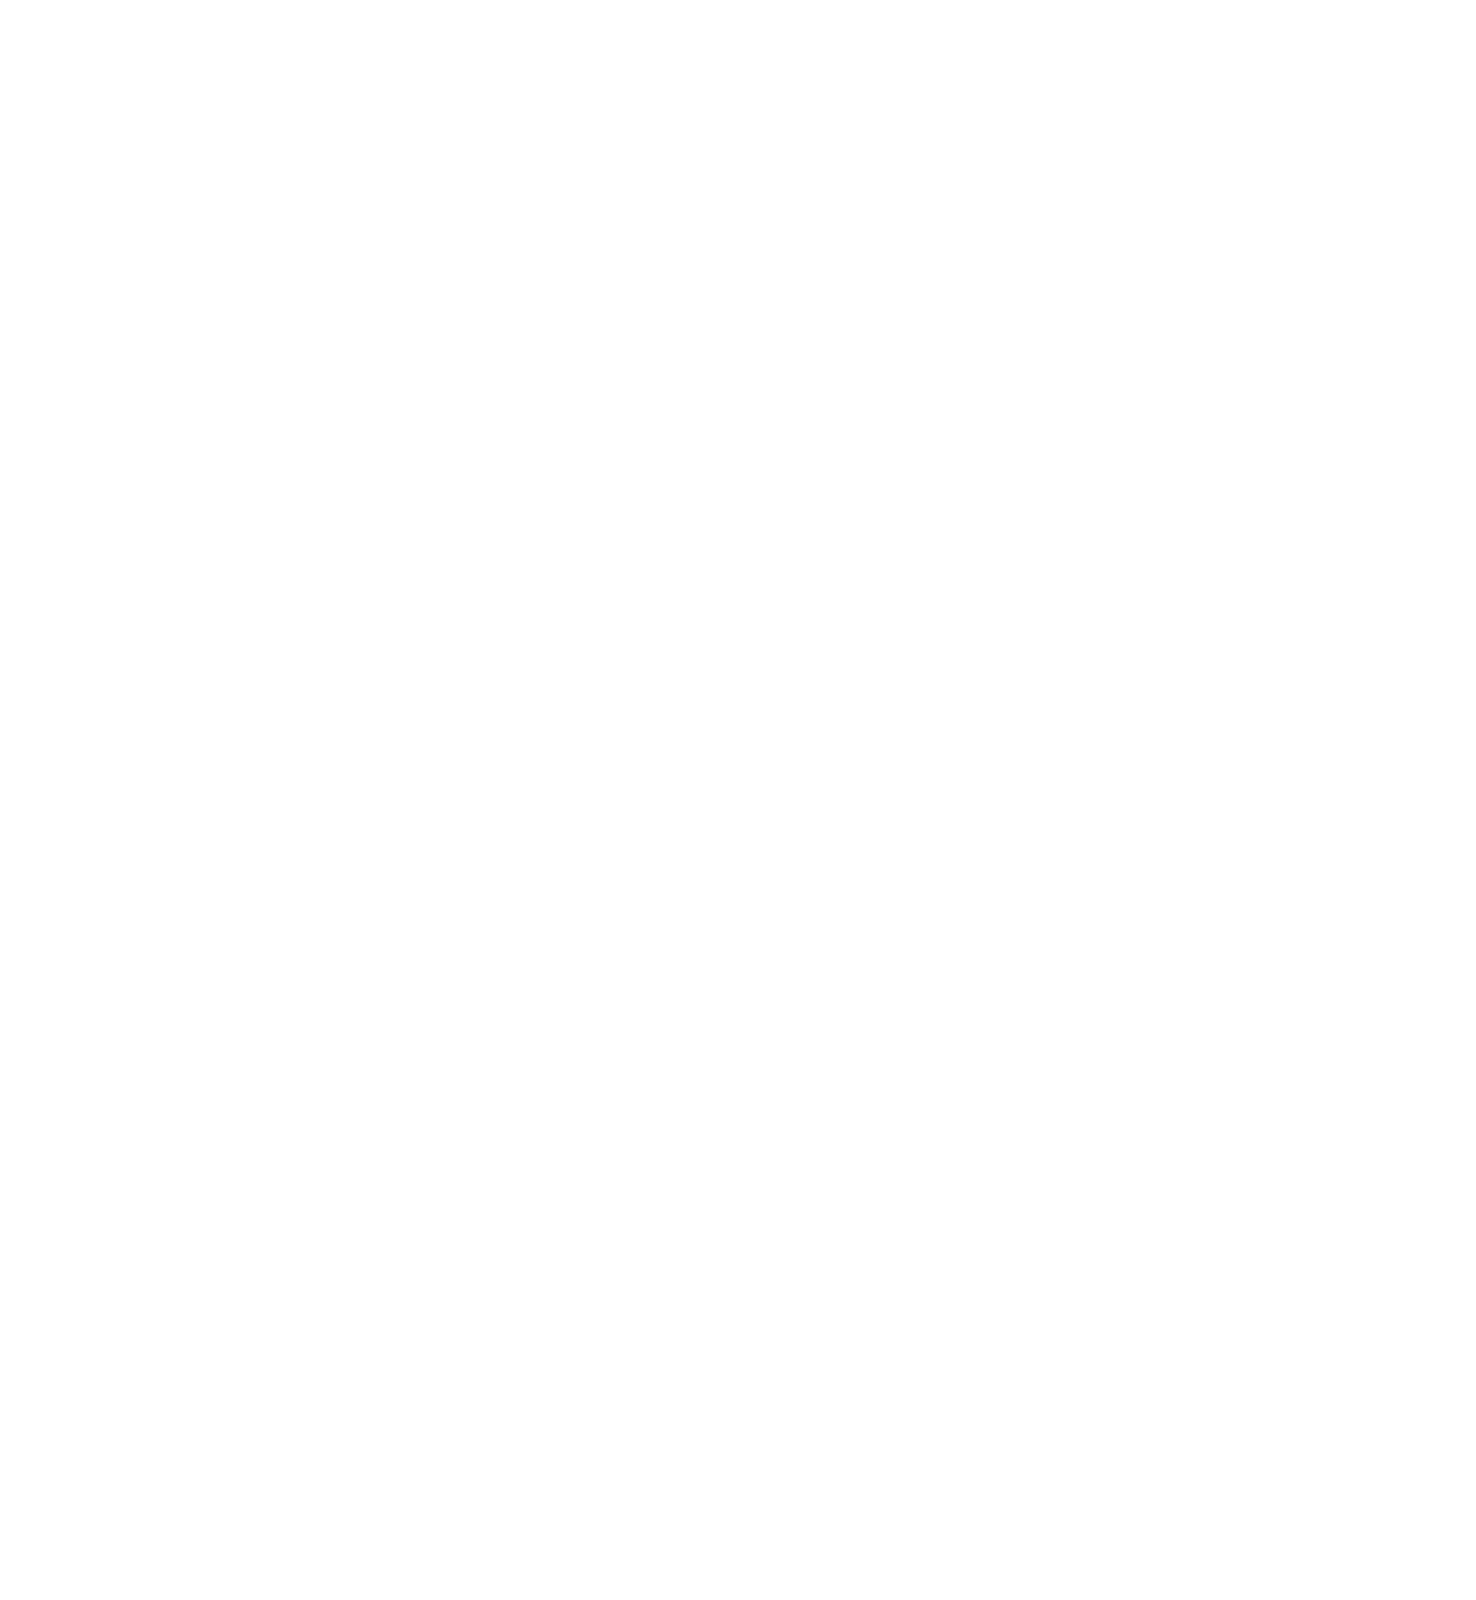 大橋トリオ、最新アルバム収録曲「三日月ララバイ」リリックビデオ公開サムネイル画像!